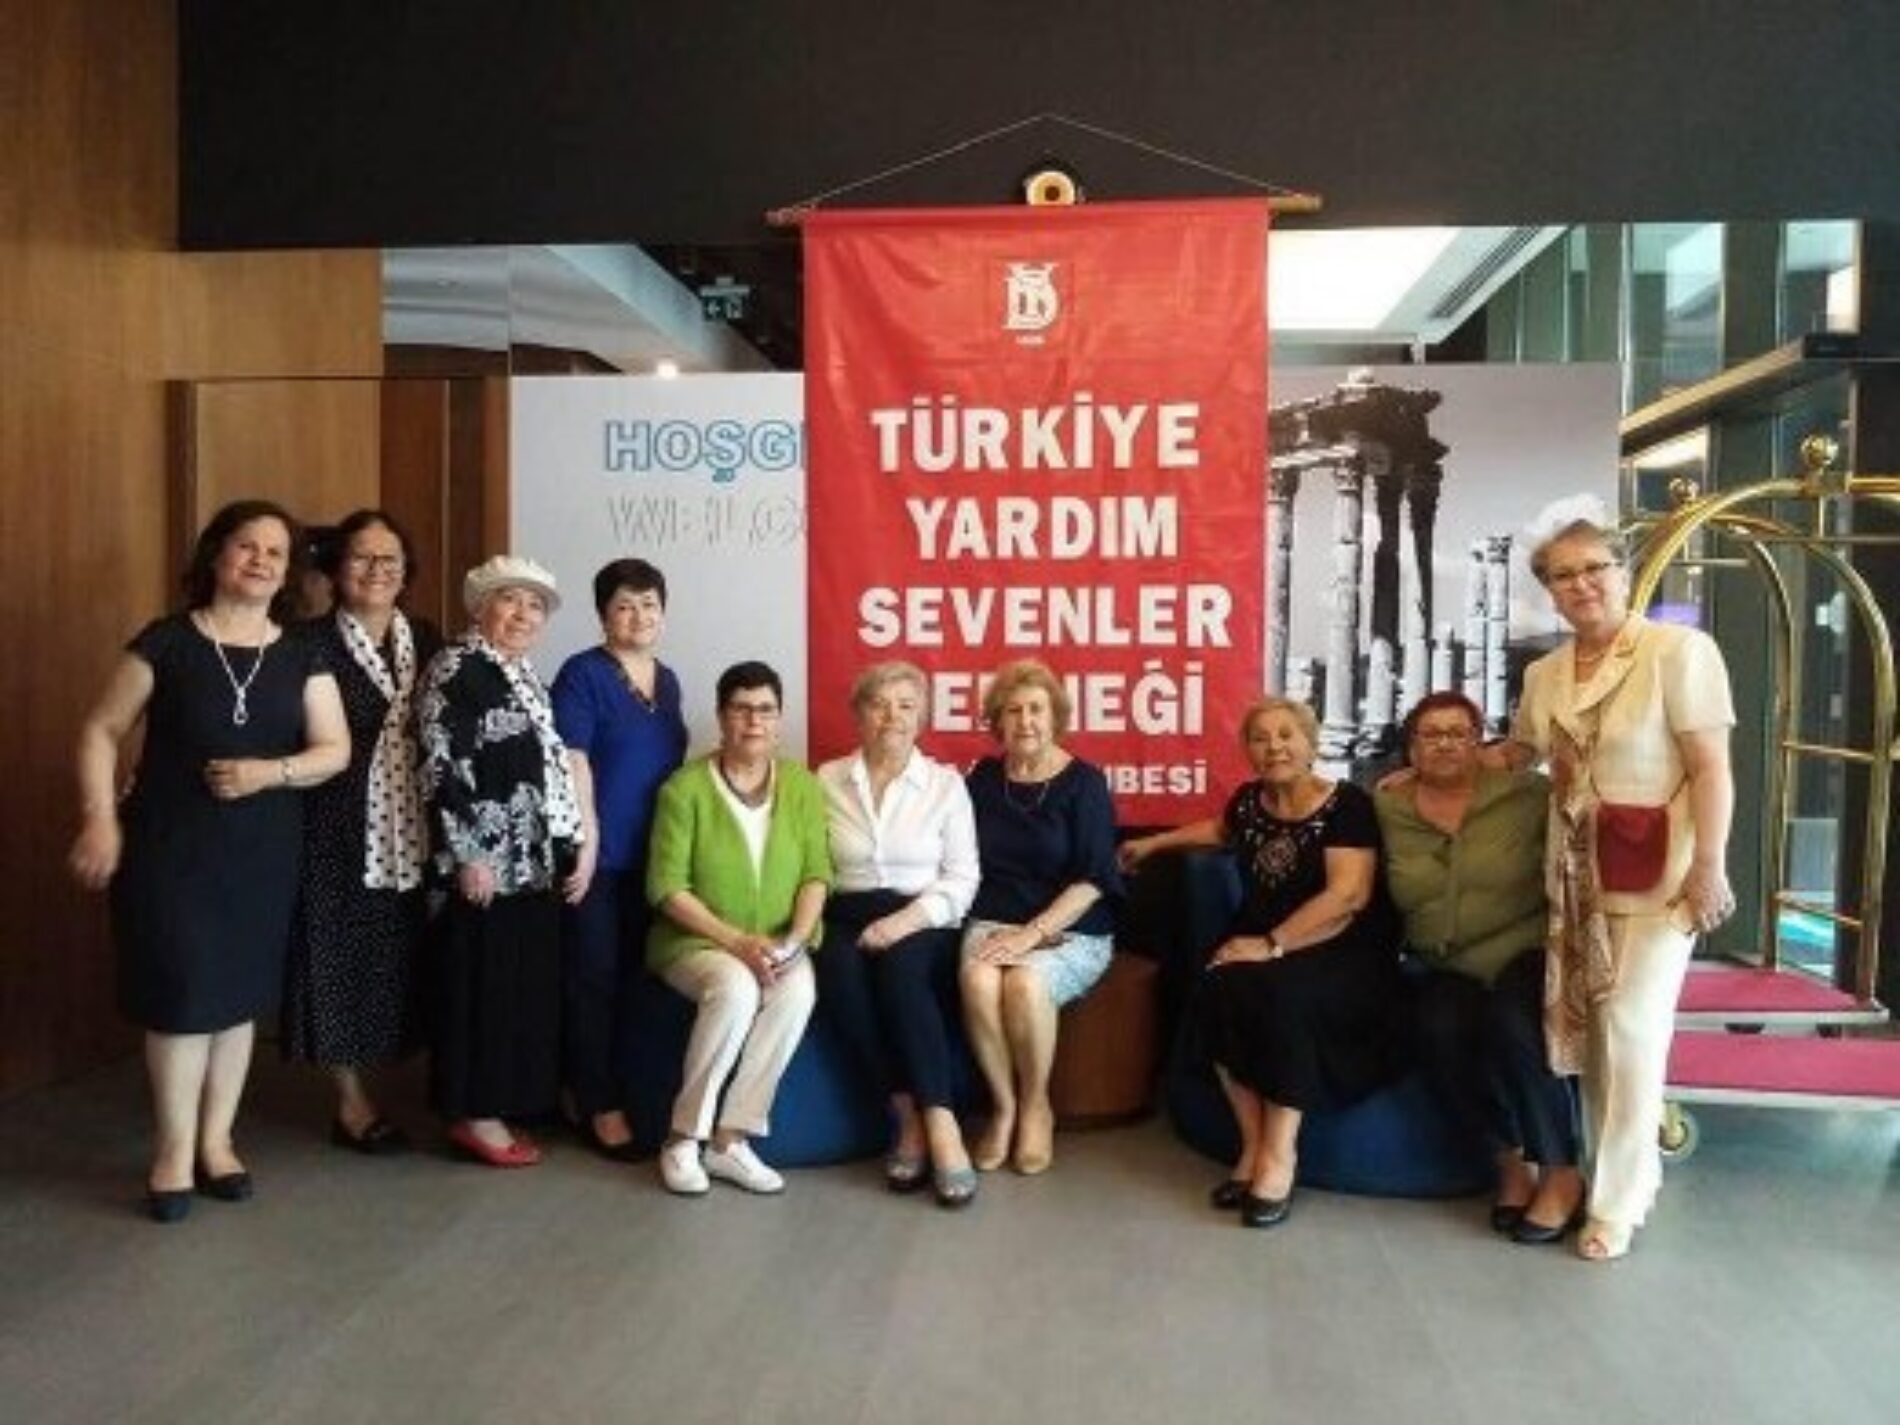 TYSD Aliağa Şubemiz Atatürk Eğitm Burslu Öğrencilerimiz Yararına Etkinlik Düzenlemiştir